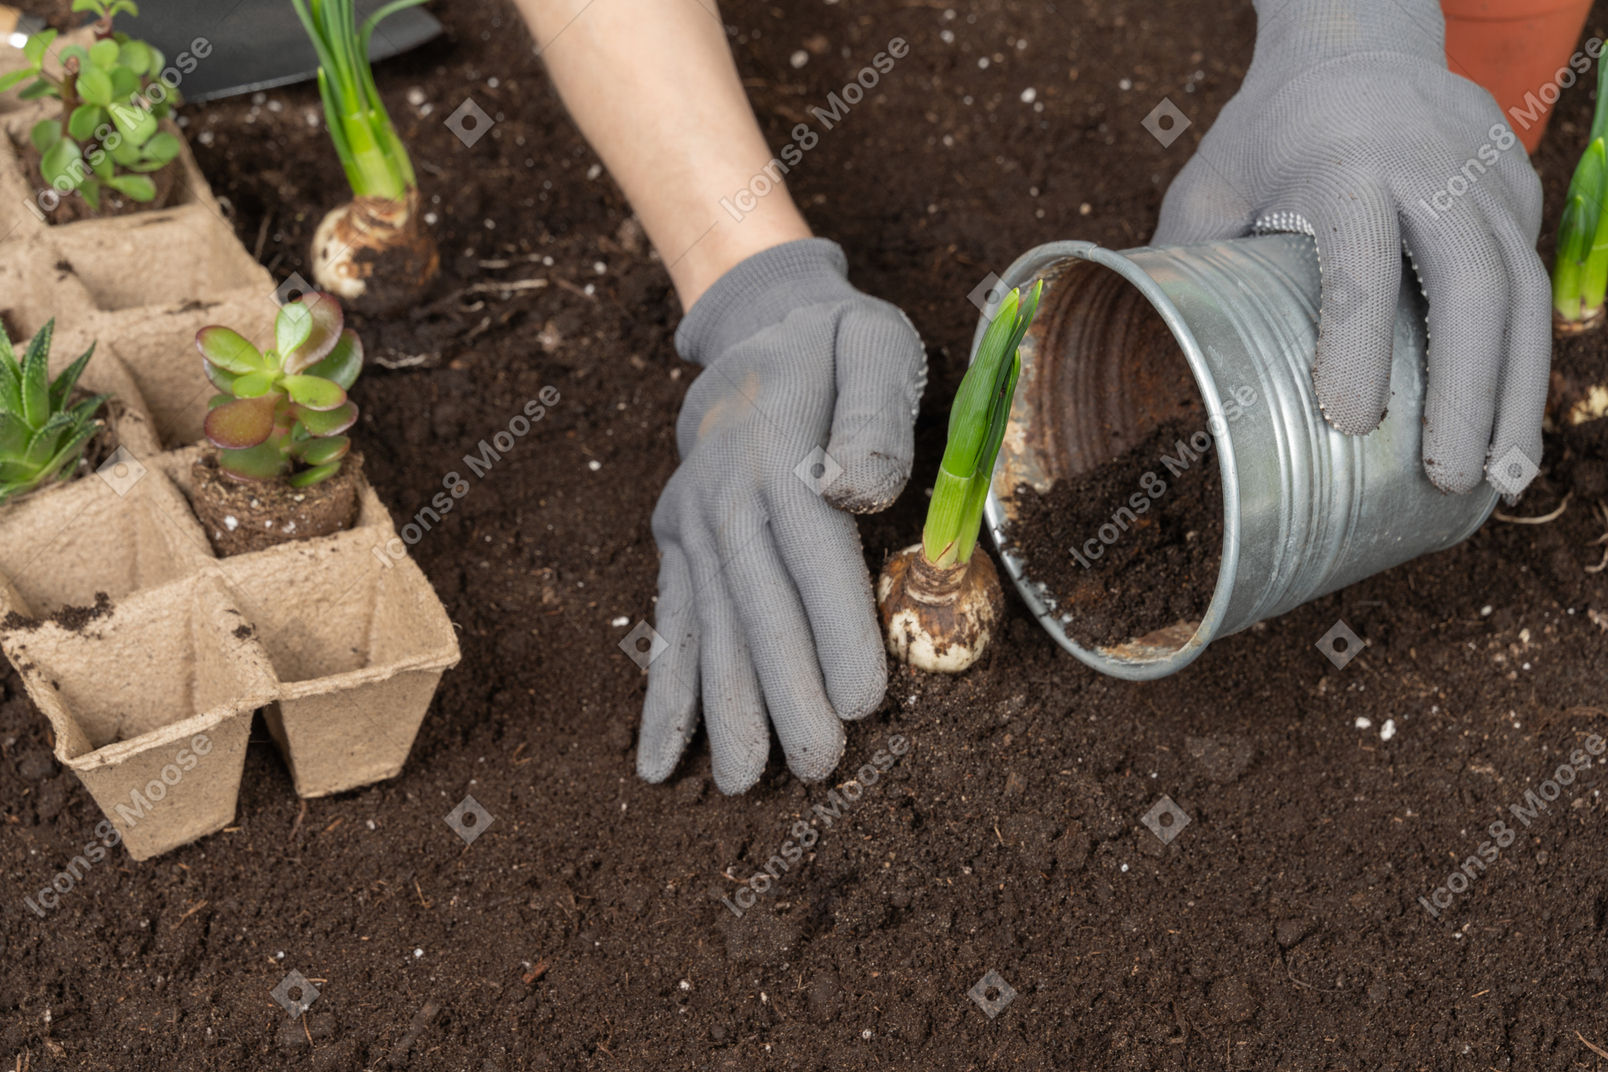 Manos humanas en guantes poniendo una planta en el suelo